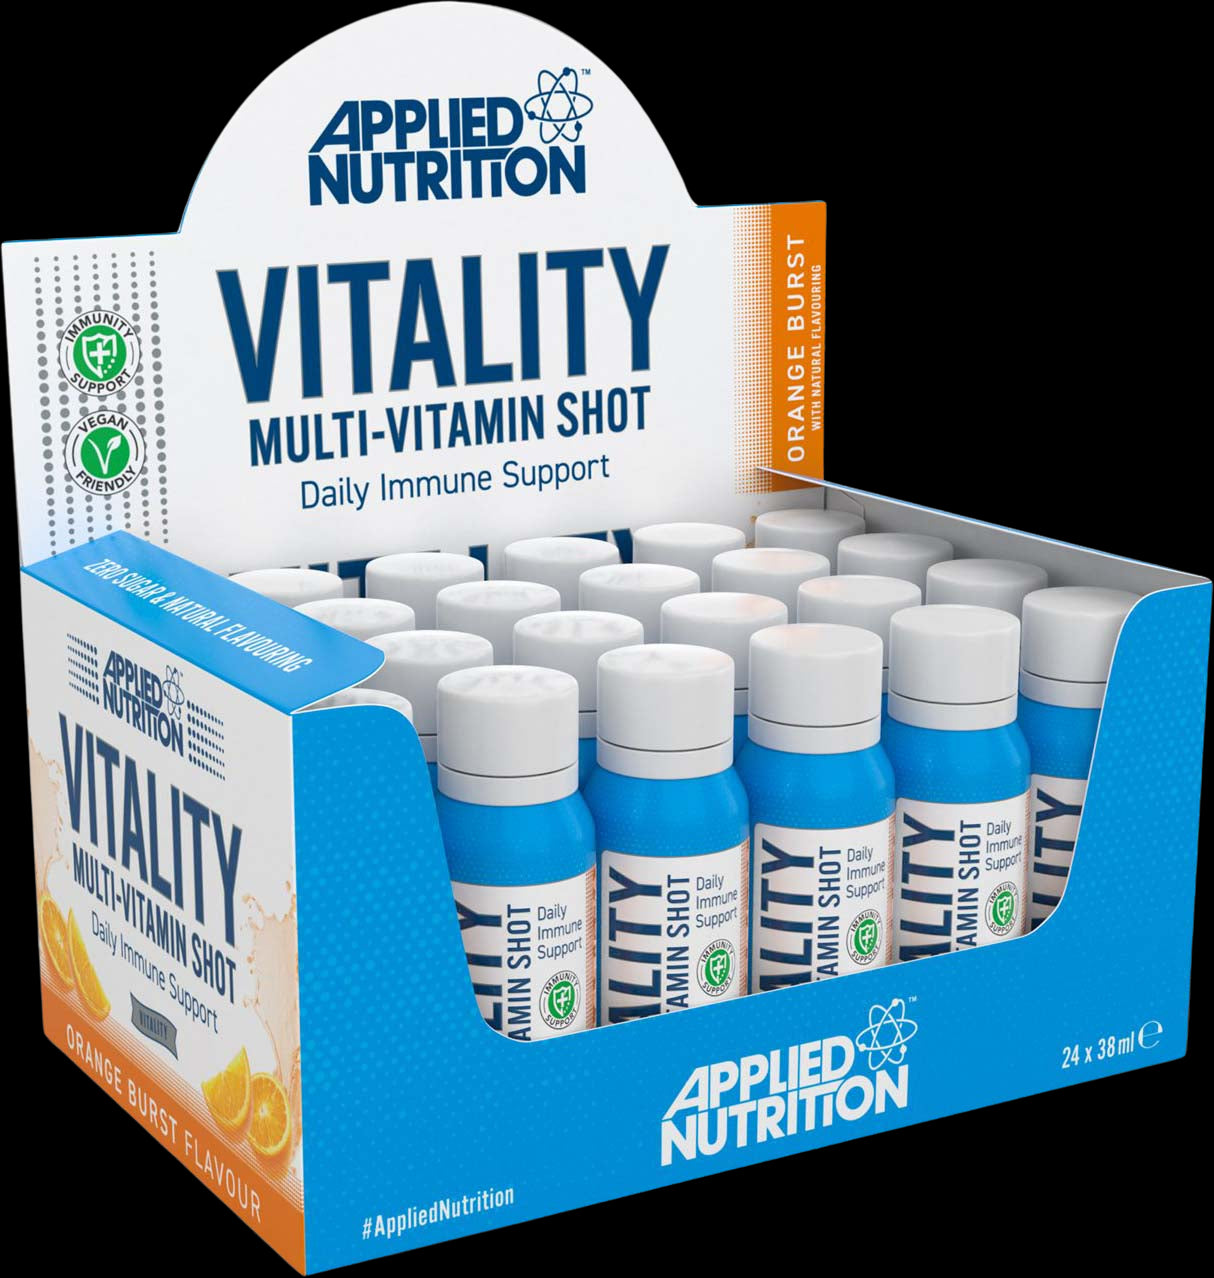 Vitality Multi-Vitamin Shot